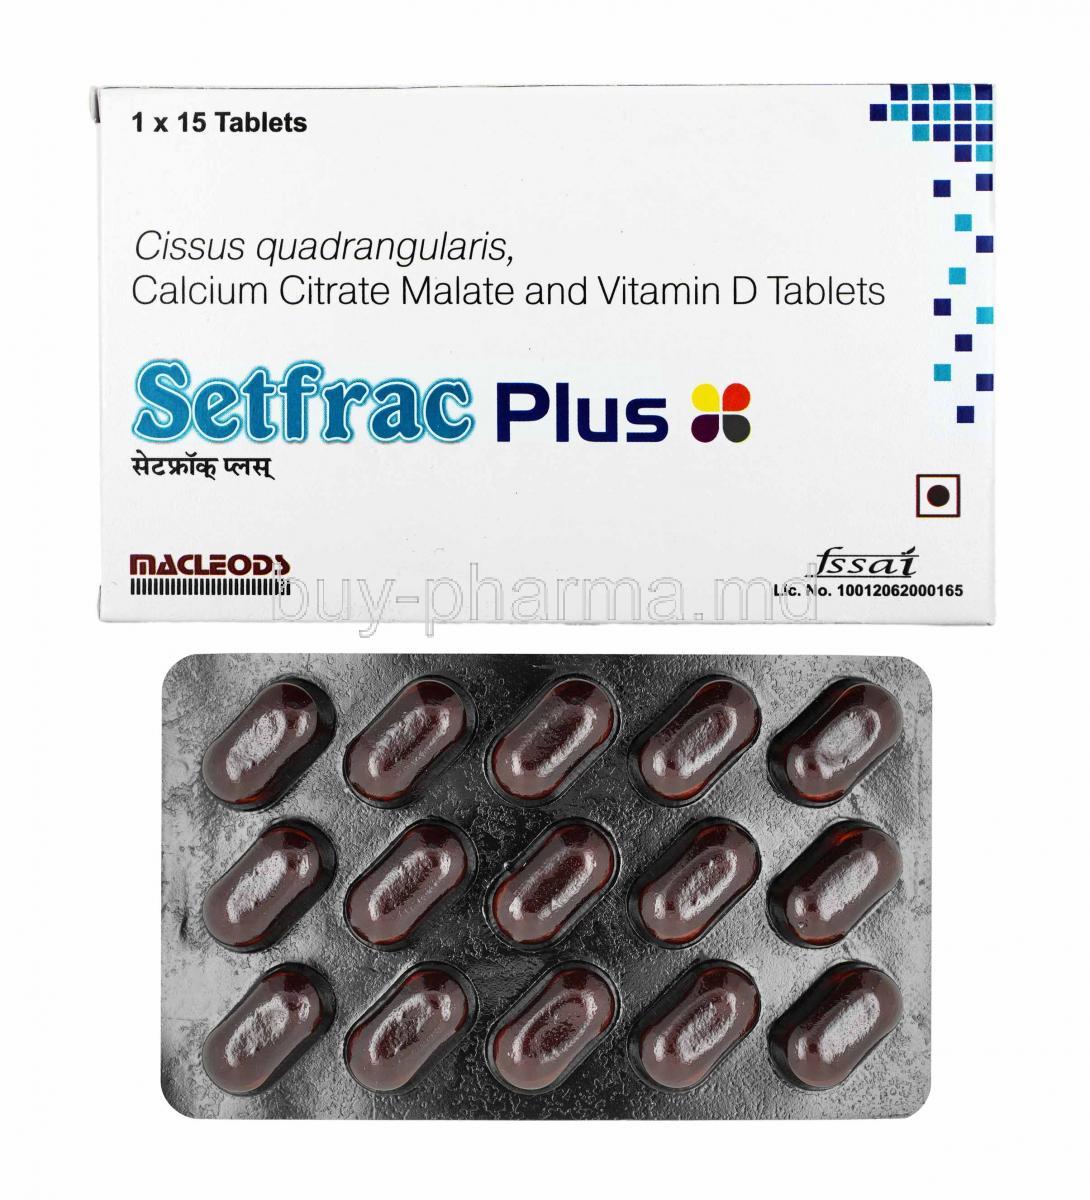 Setfrac Plus, Cissus Quadrangularis, Calcium and Vitamin D3 box and tablets